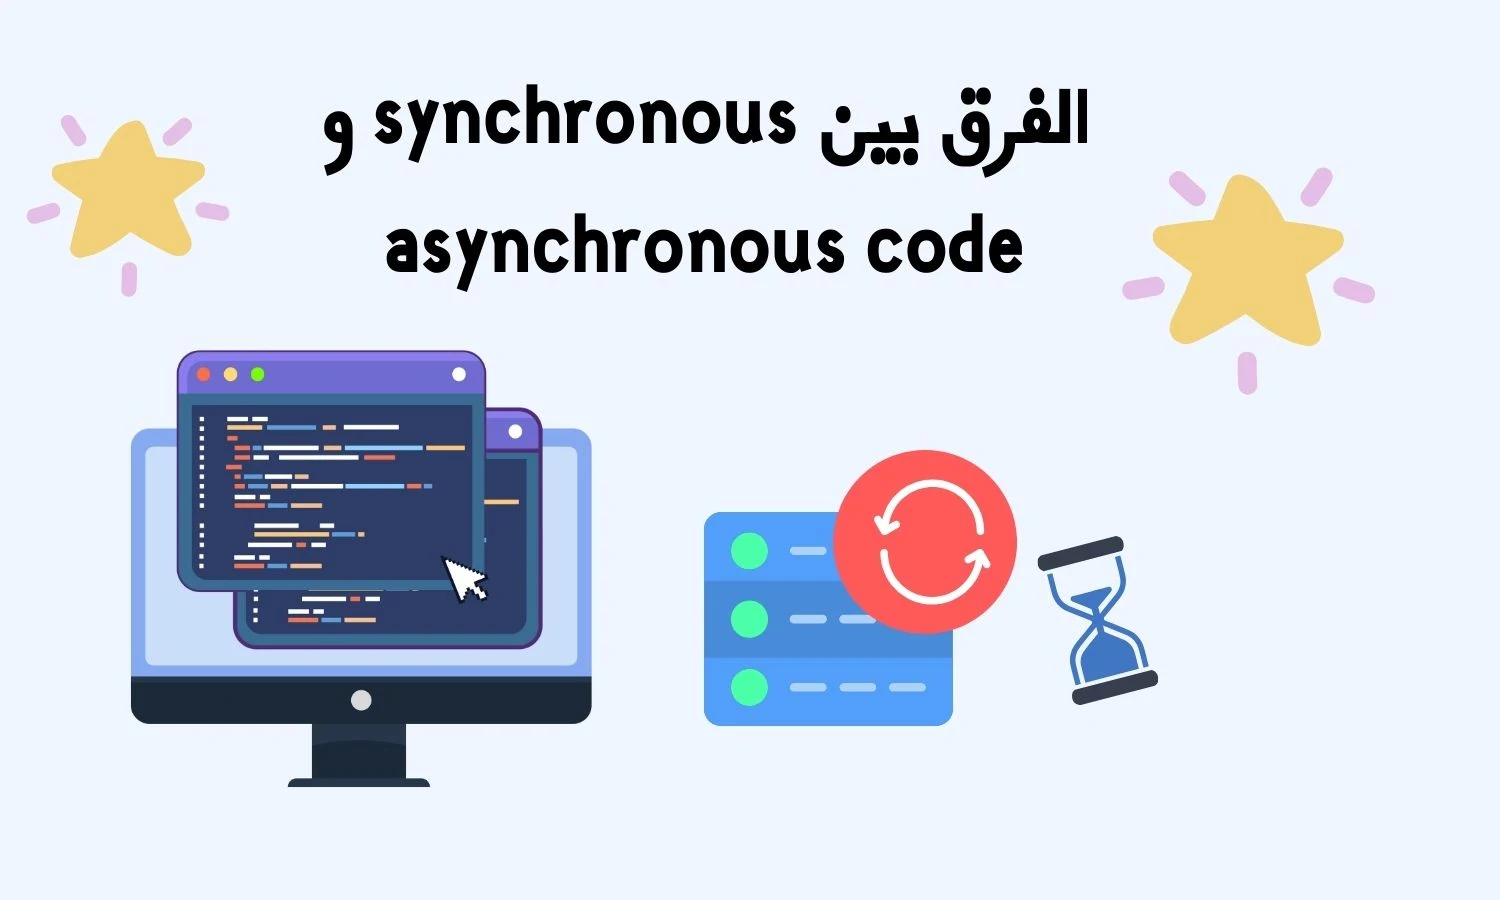 ما الفرق بين synchronous و asynchronous في الجافاسكريبت؟